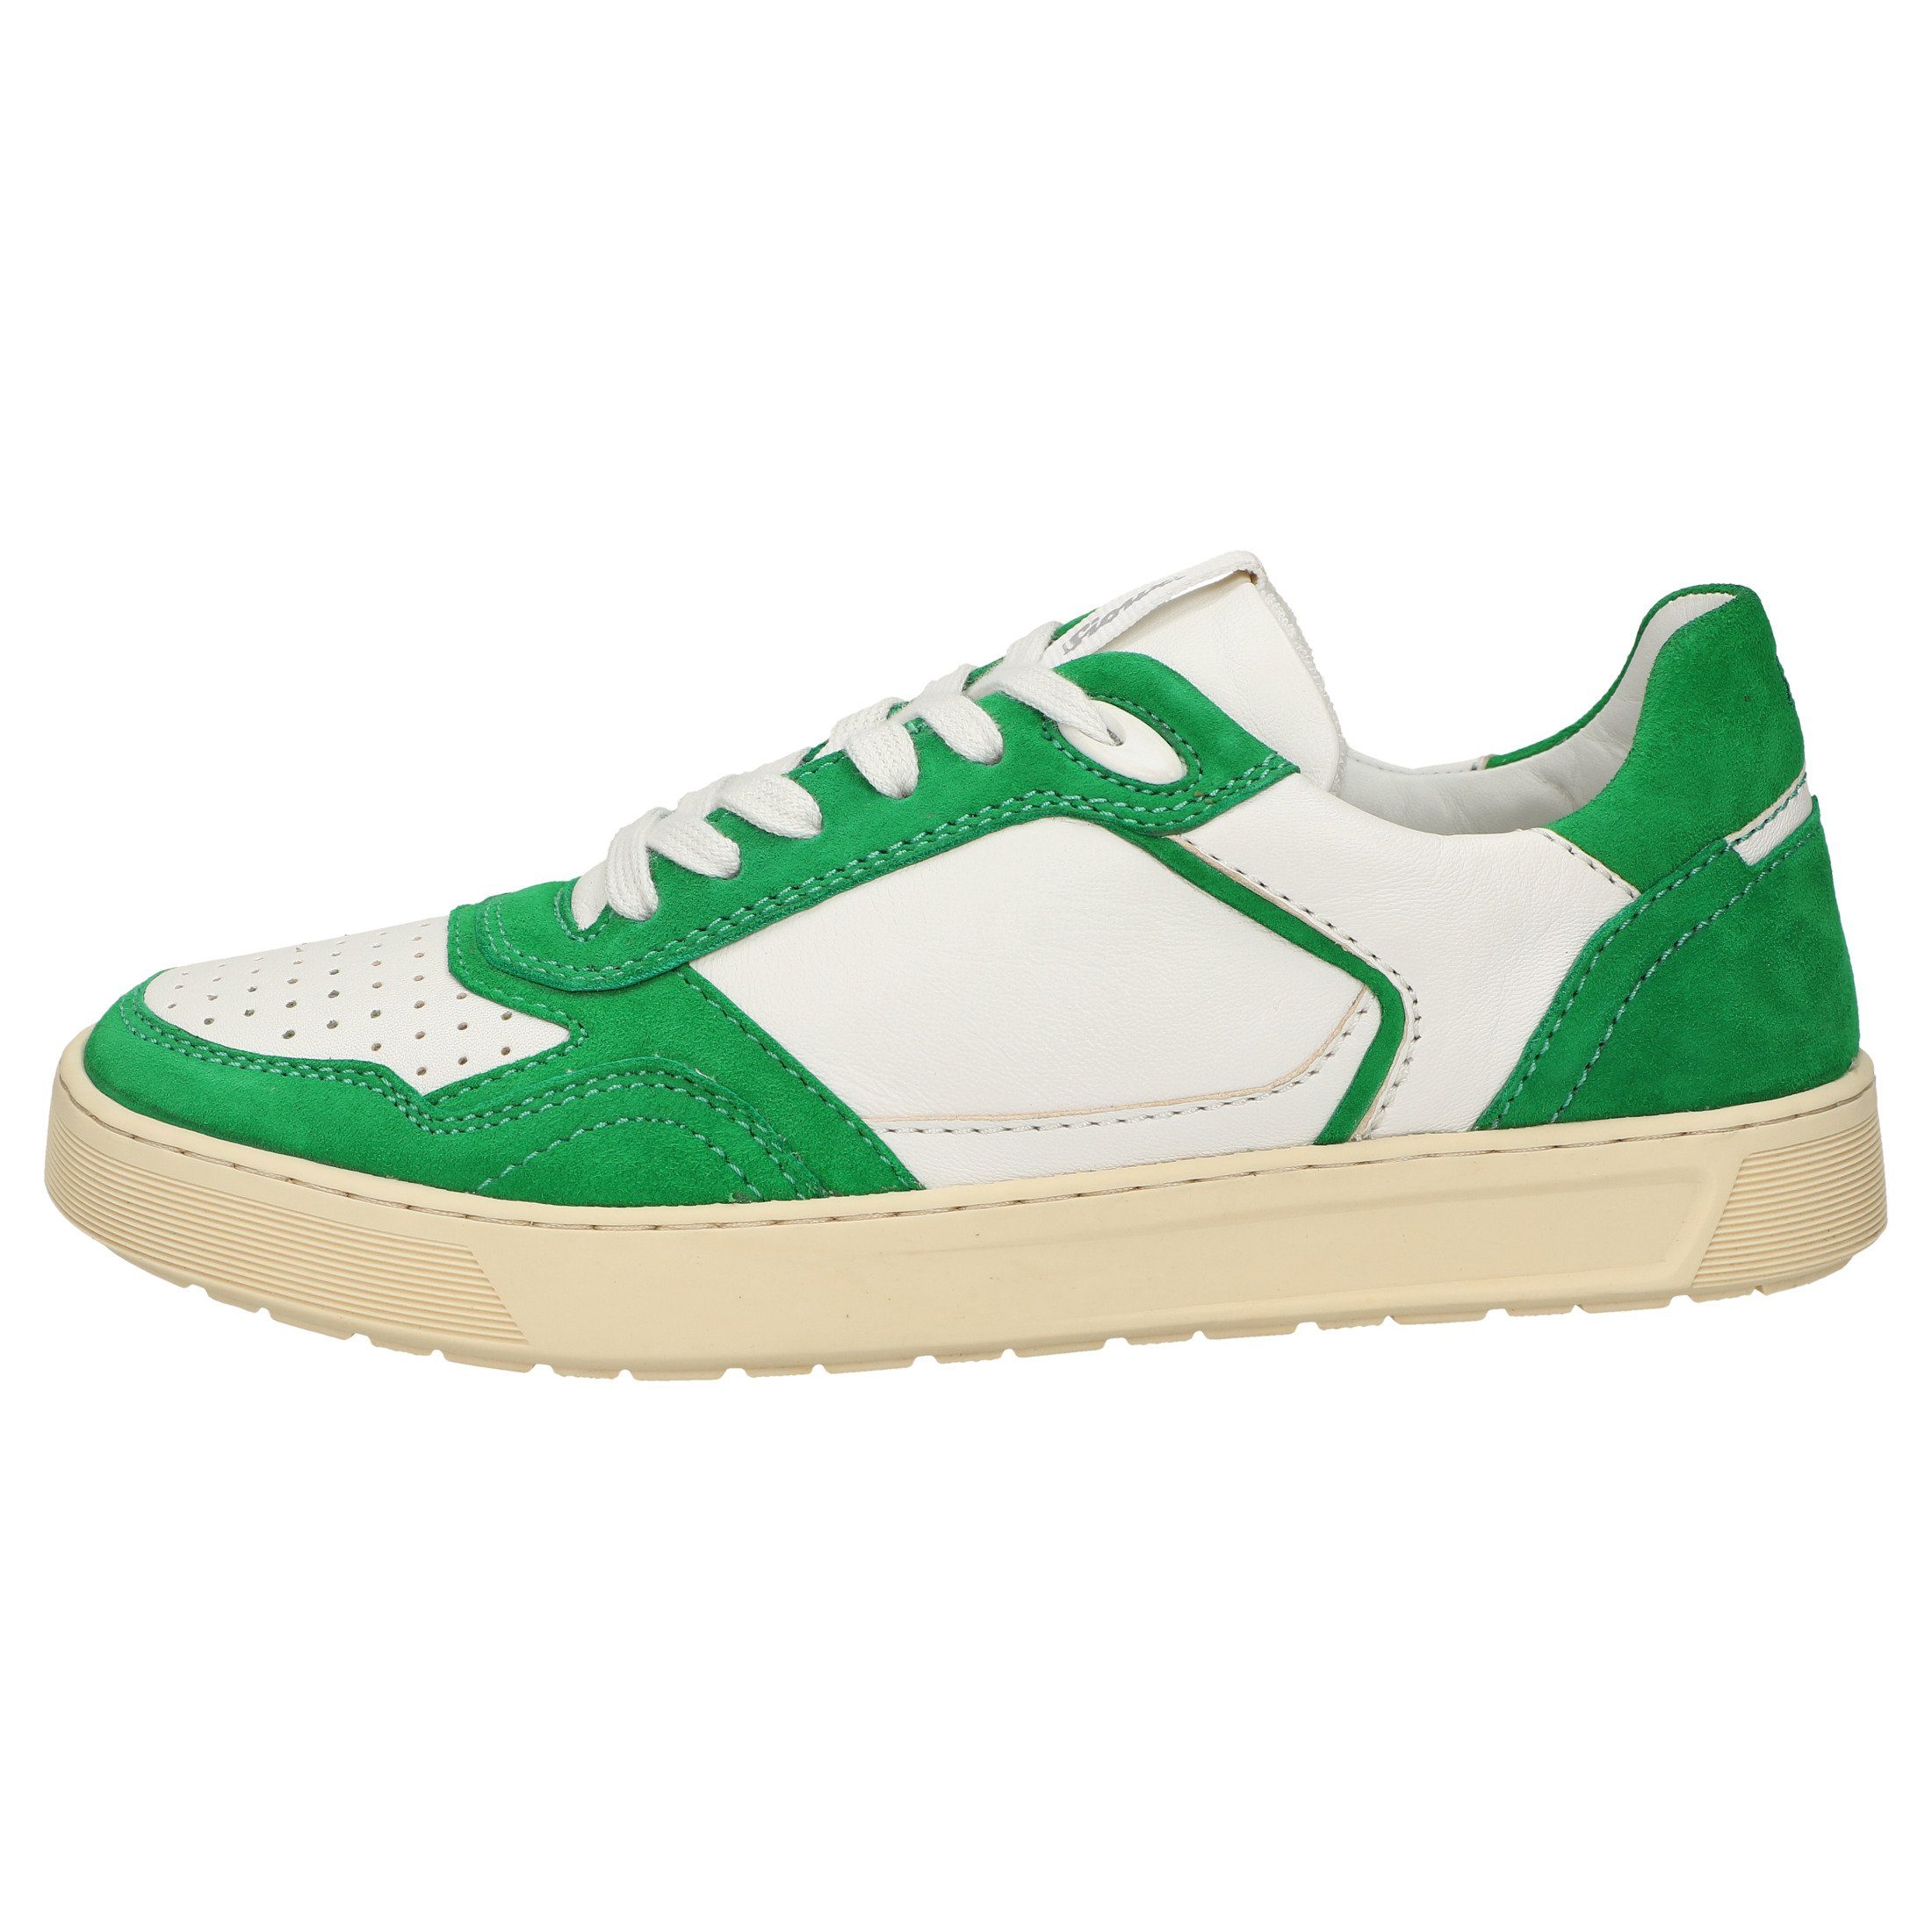 SIOUX Tils grün Sneaker sneaker-D 008